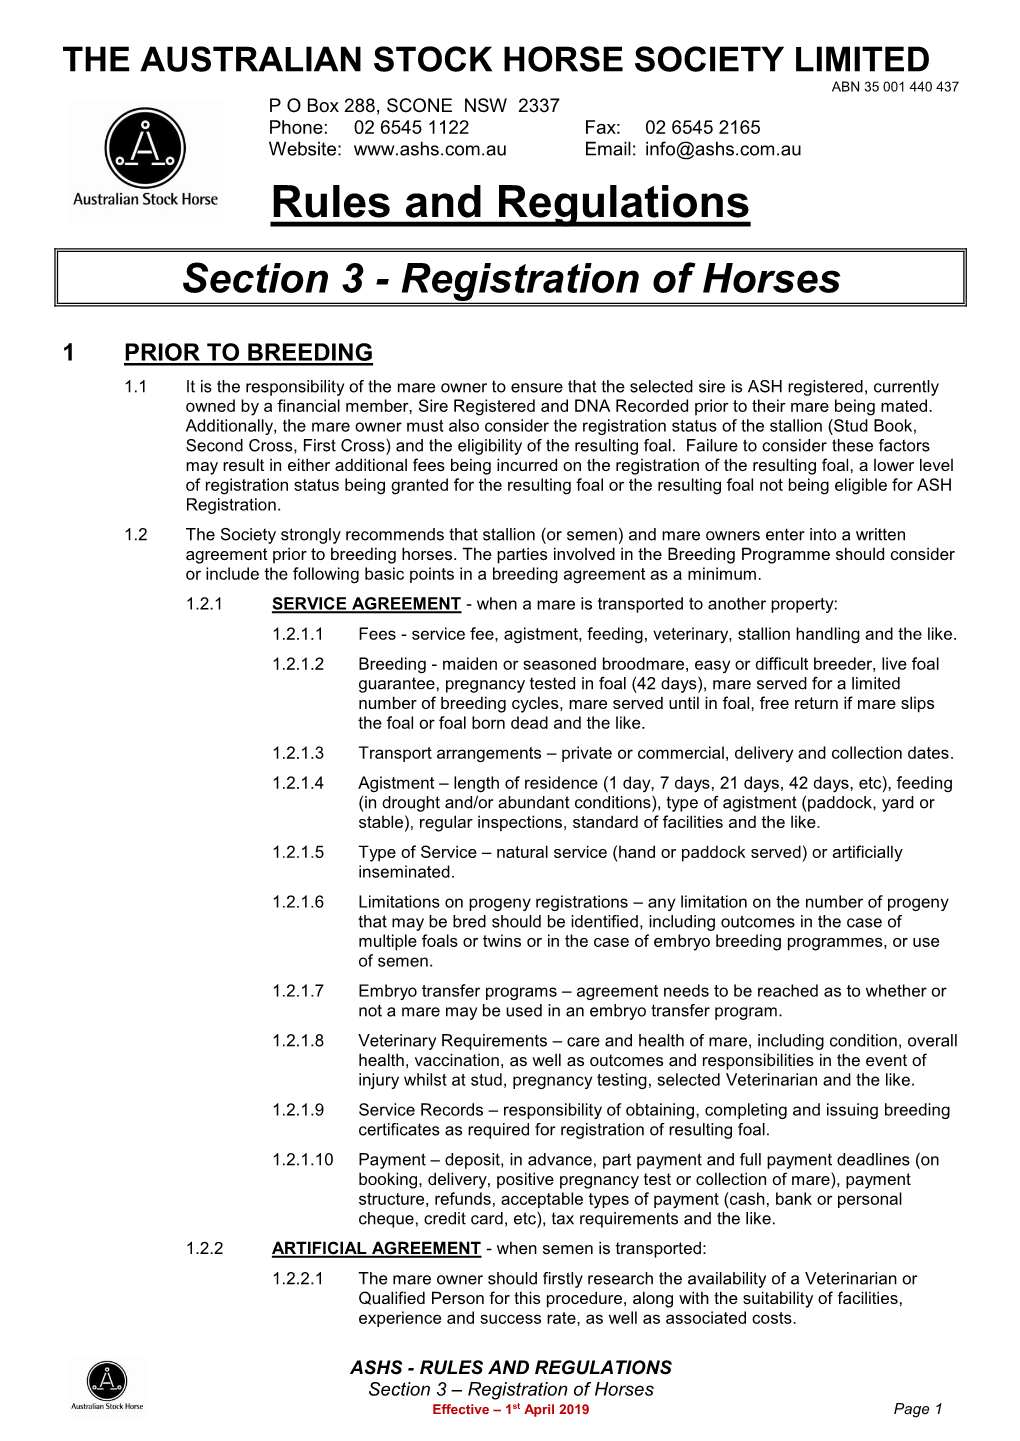 Rules and Regulations Amendments – Registration of Horses